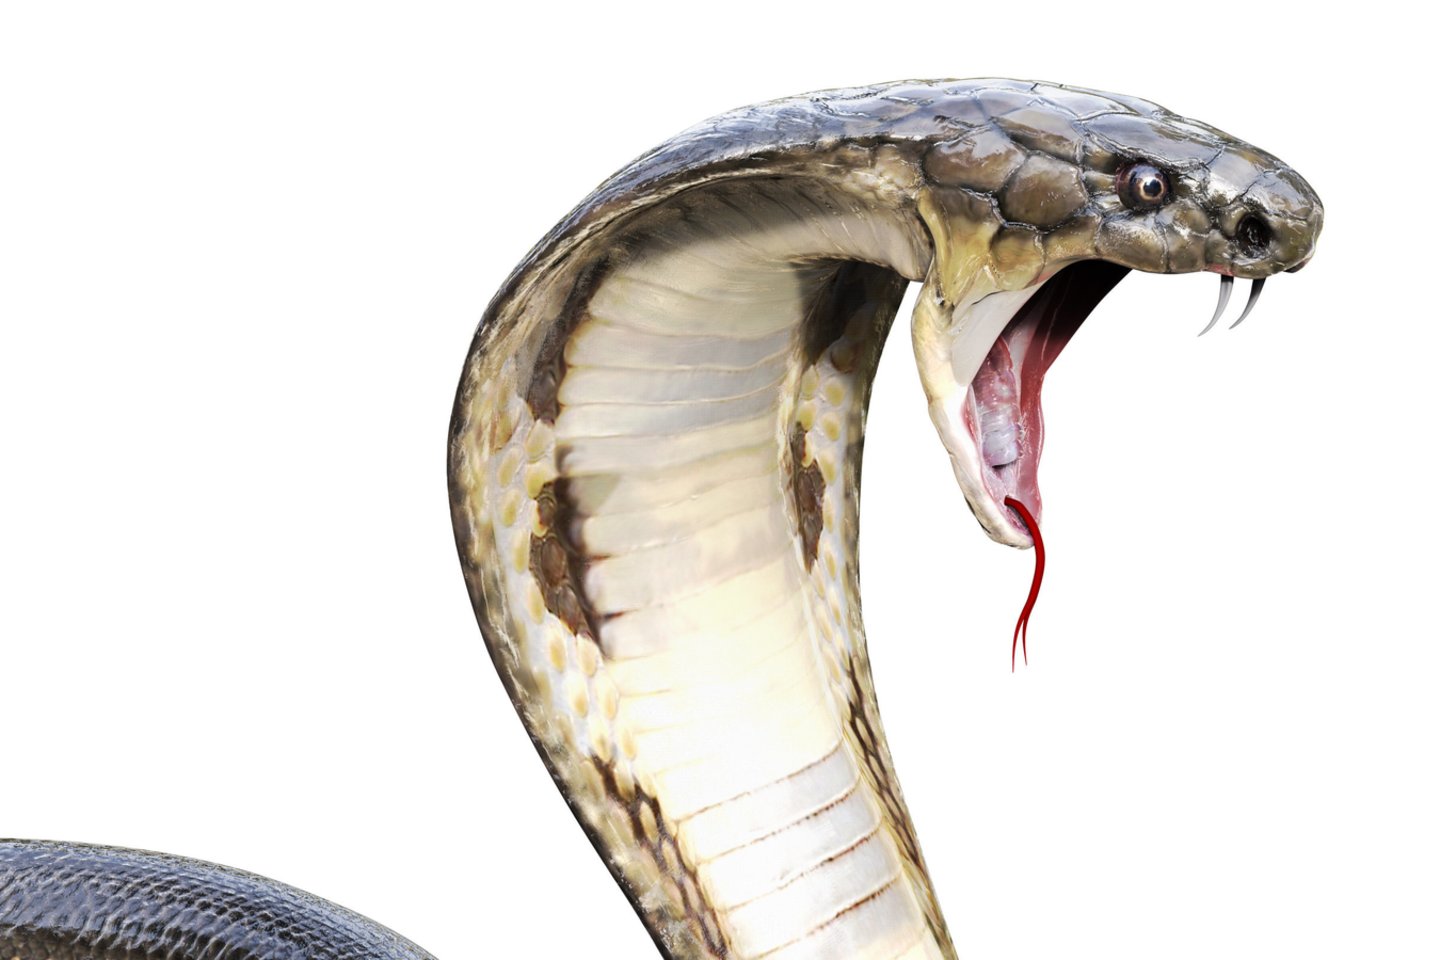  Tailandiečiai nupjauna gyvai kobrai galvą ir pasiūlo paragauti jos kraujo. Kas nors visada sutinka.<br> 123rf iliustr.